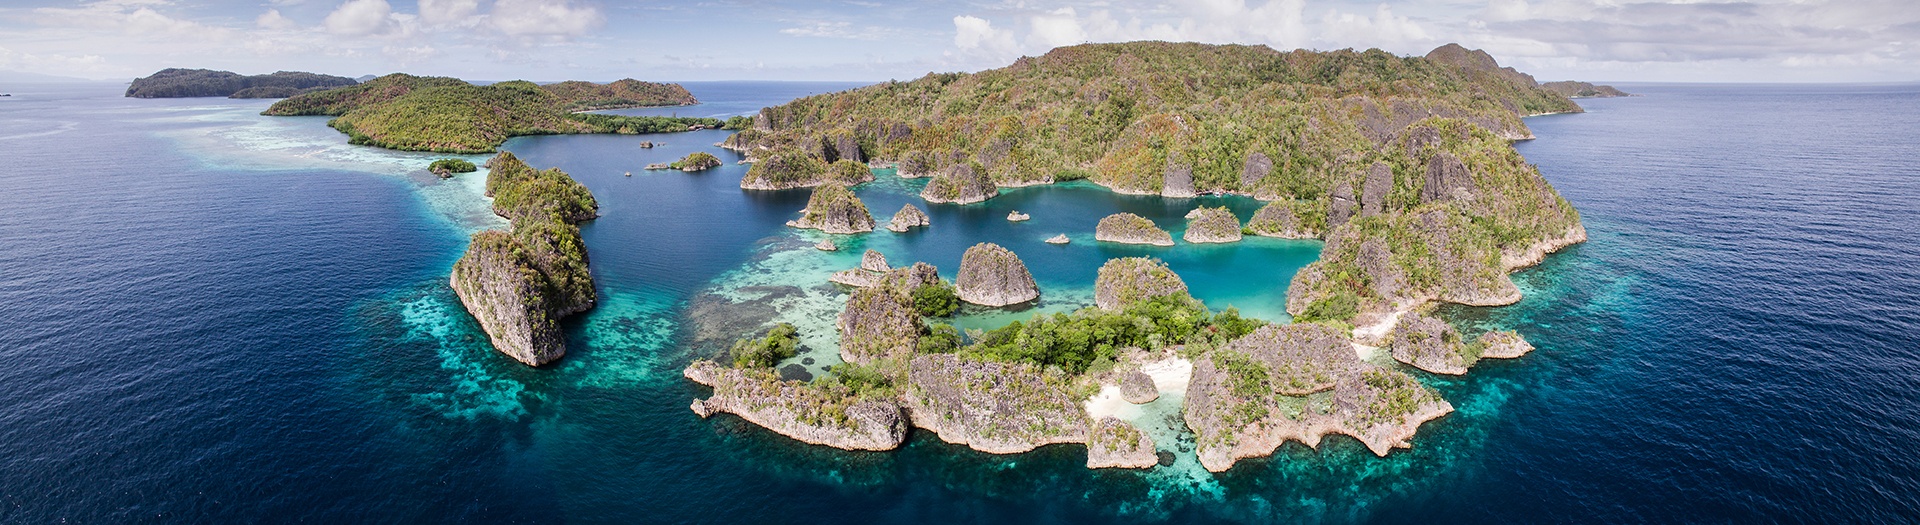 Voyage sur l'archipel des Raja Ampat: plongée, croisières, rando